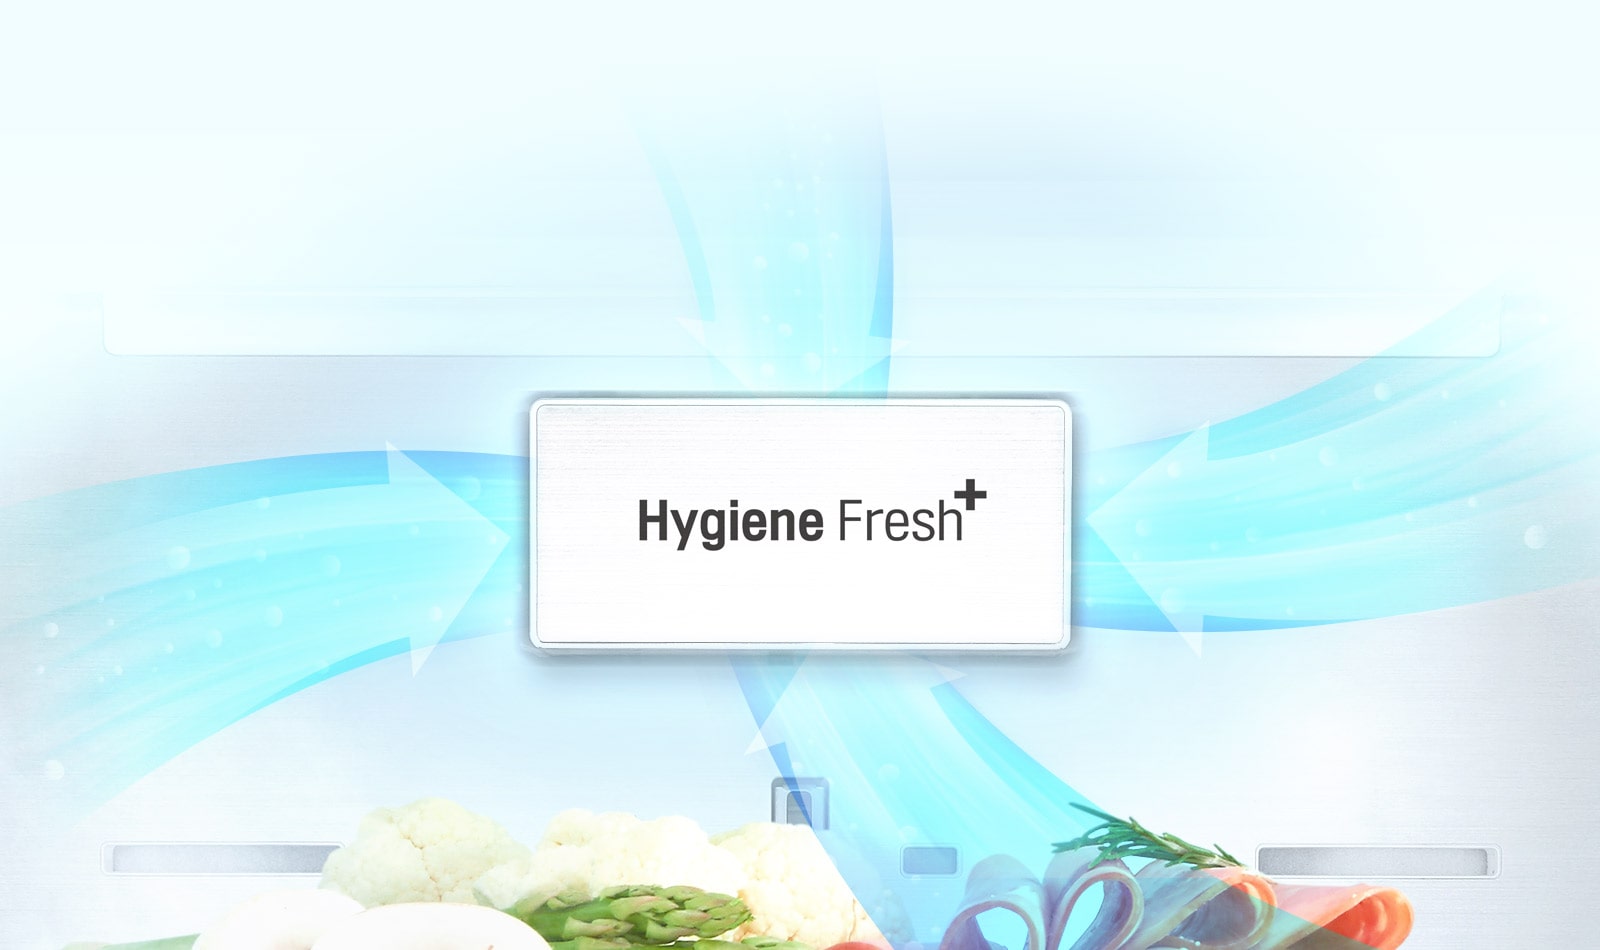 Hygiene Fresh⁺: 99.999% Fresh Air